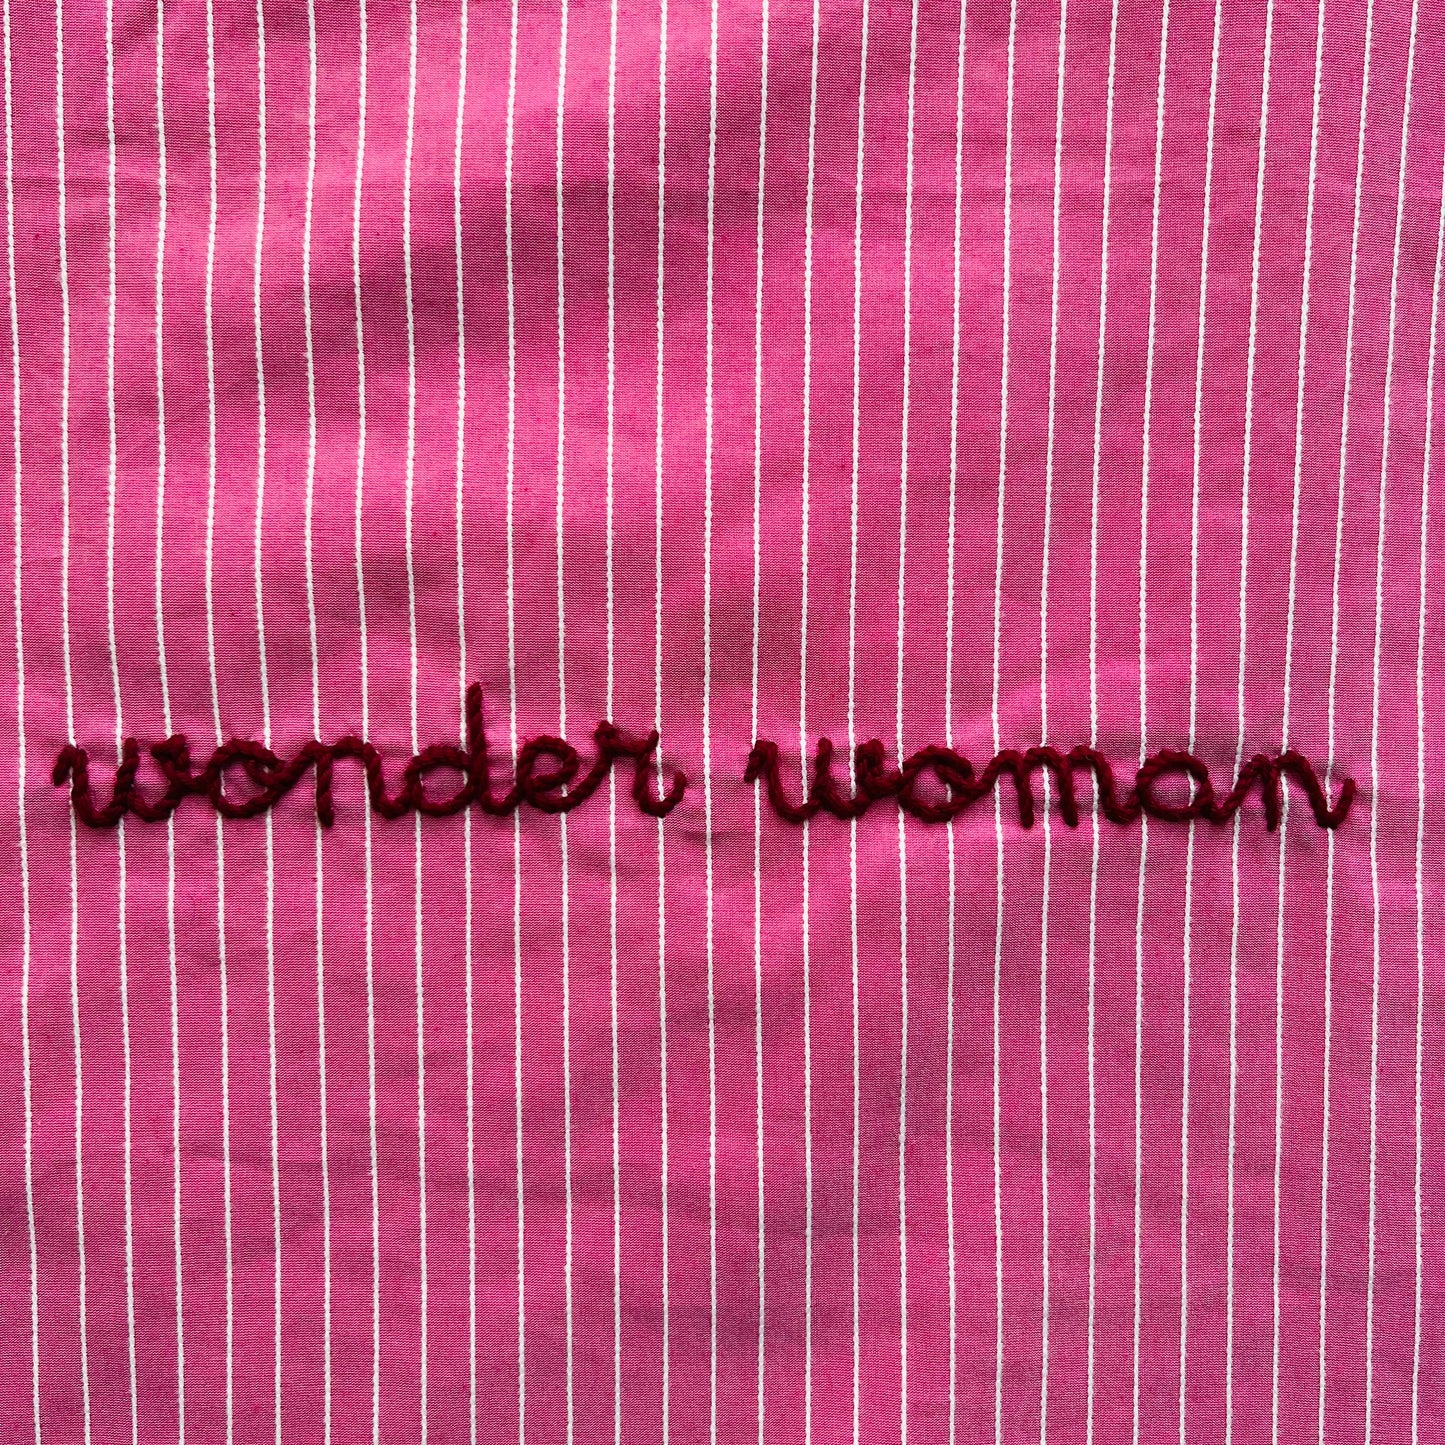 shopping bag "wonder woman" rosa peonia con righine bianche in rilievo e manici volants